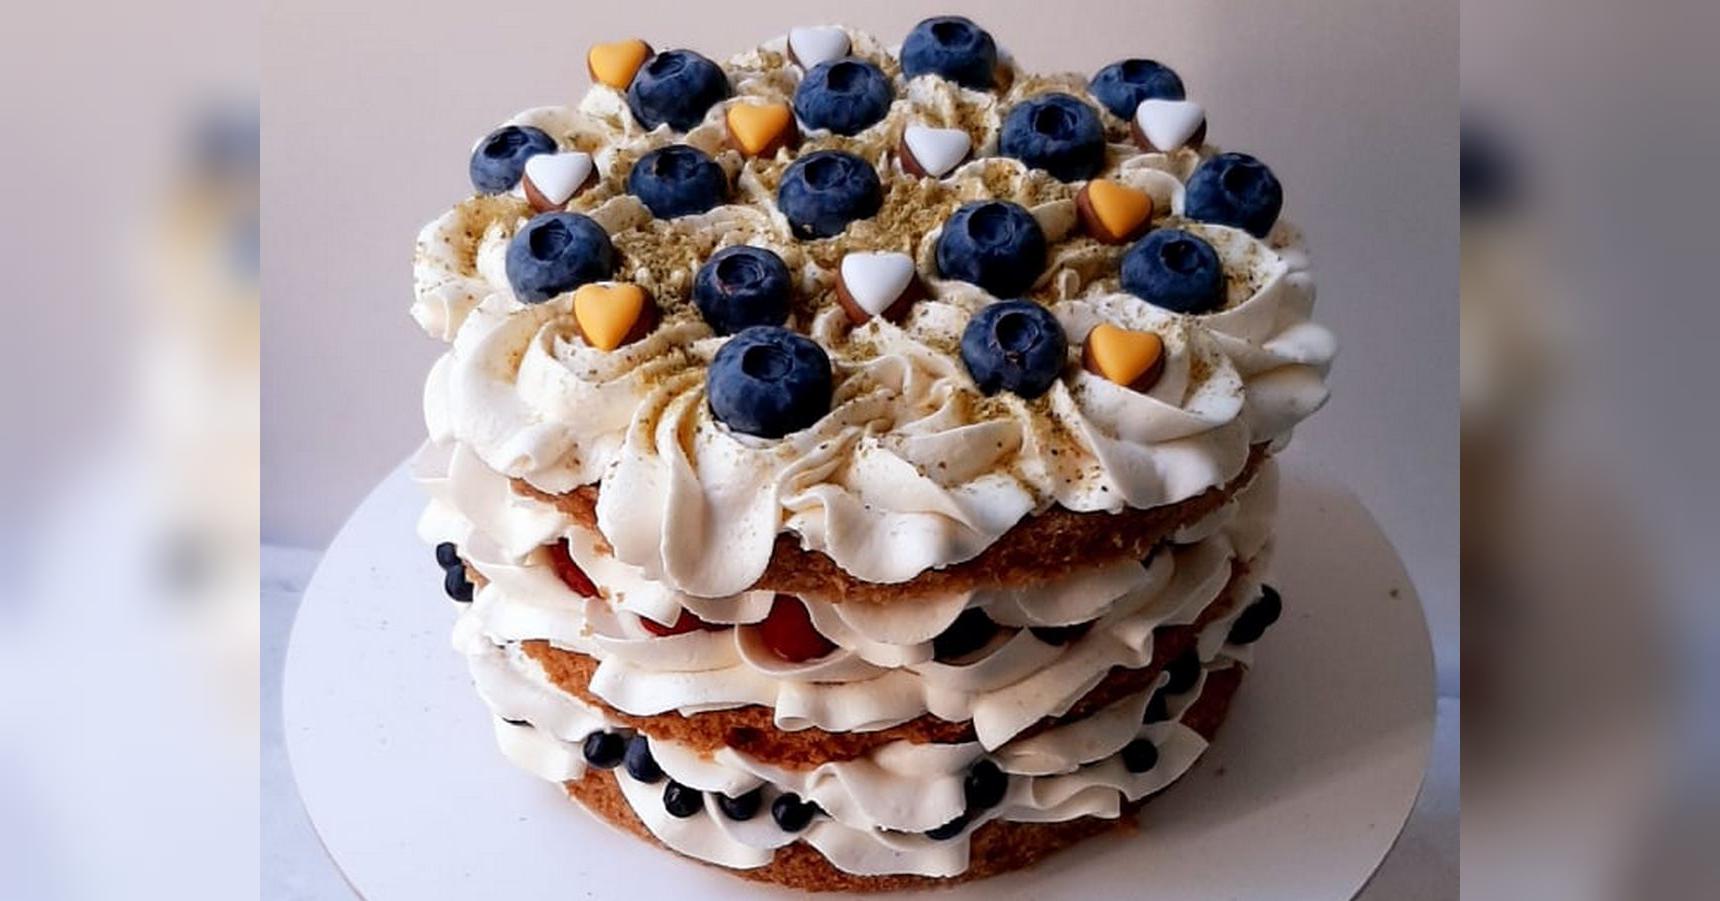 Стиль жизни от Bellissima Casa: Рецепт авторского торта Королева Виктория